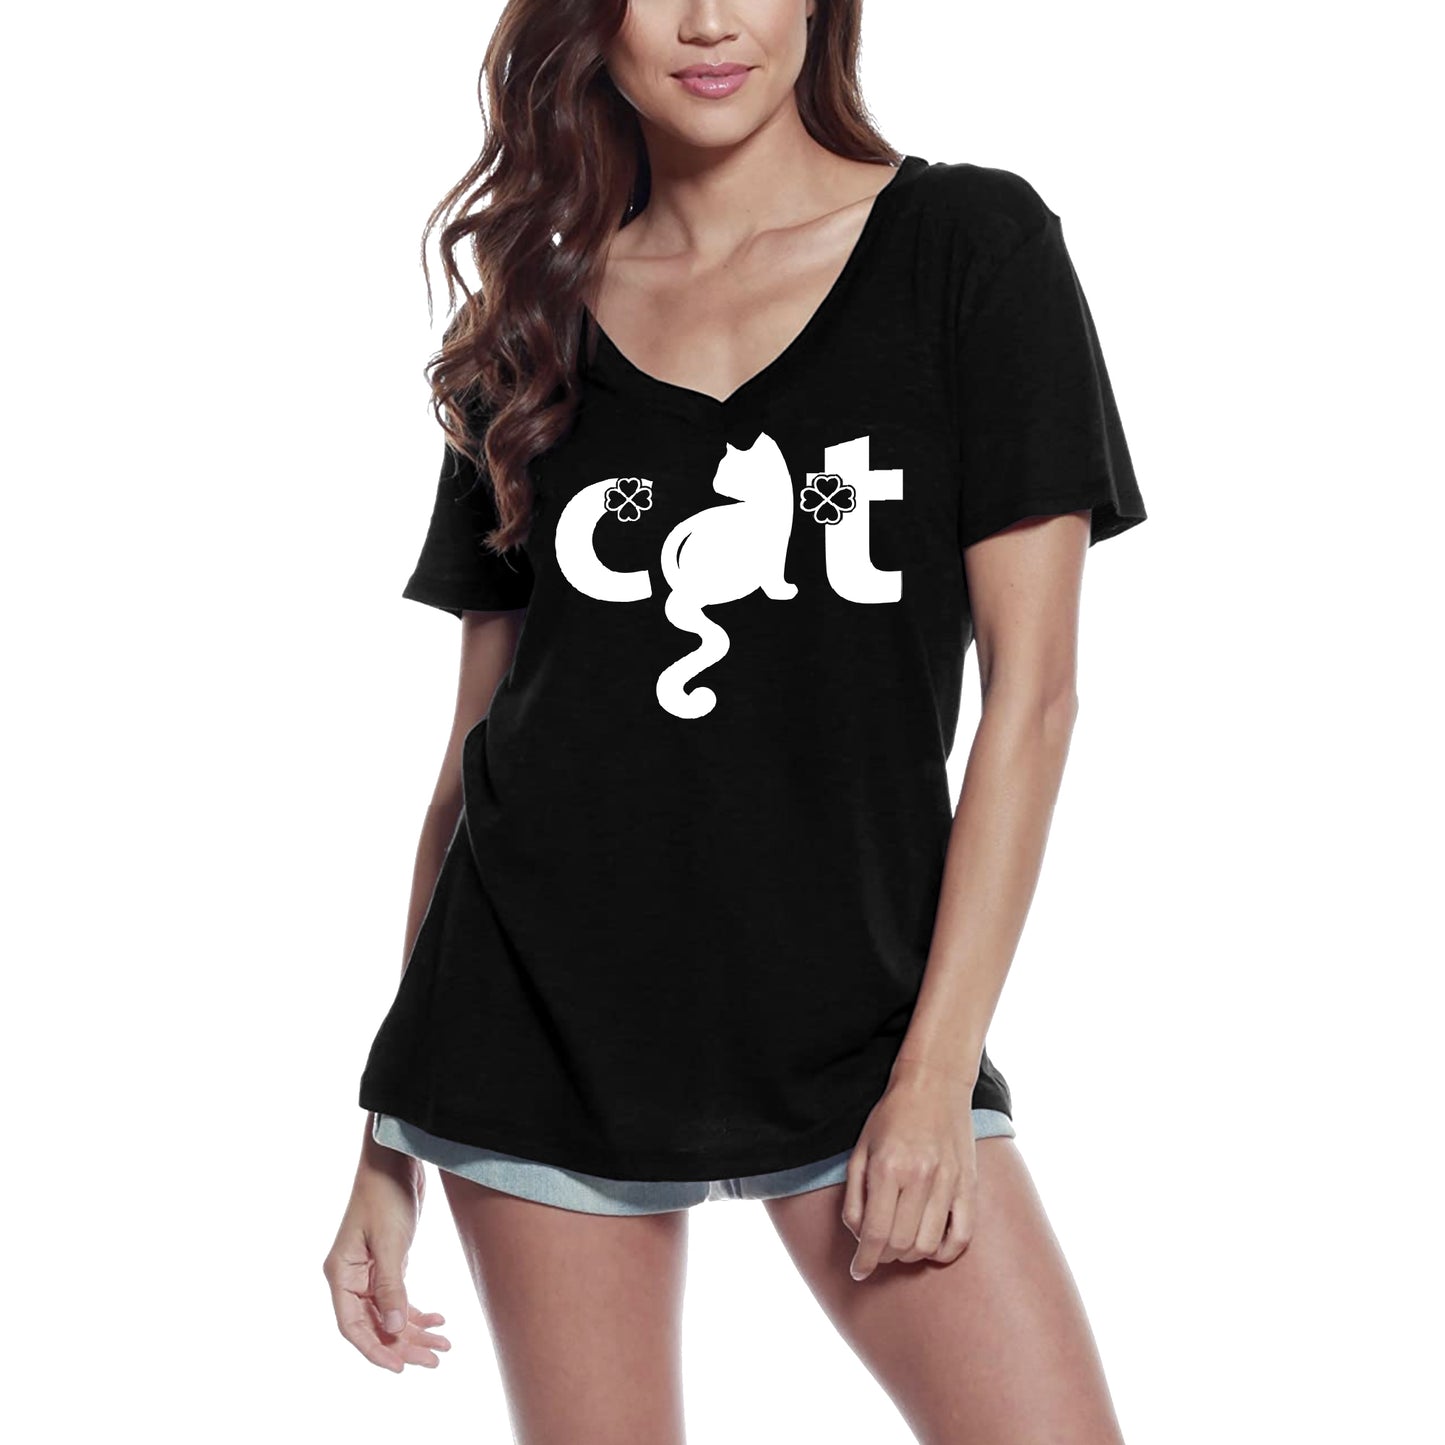 ULTRABASIC Women's T-Shirt Lucky Cat Shamrock - Funny Kitten Shirt for Cat Lovers